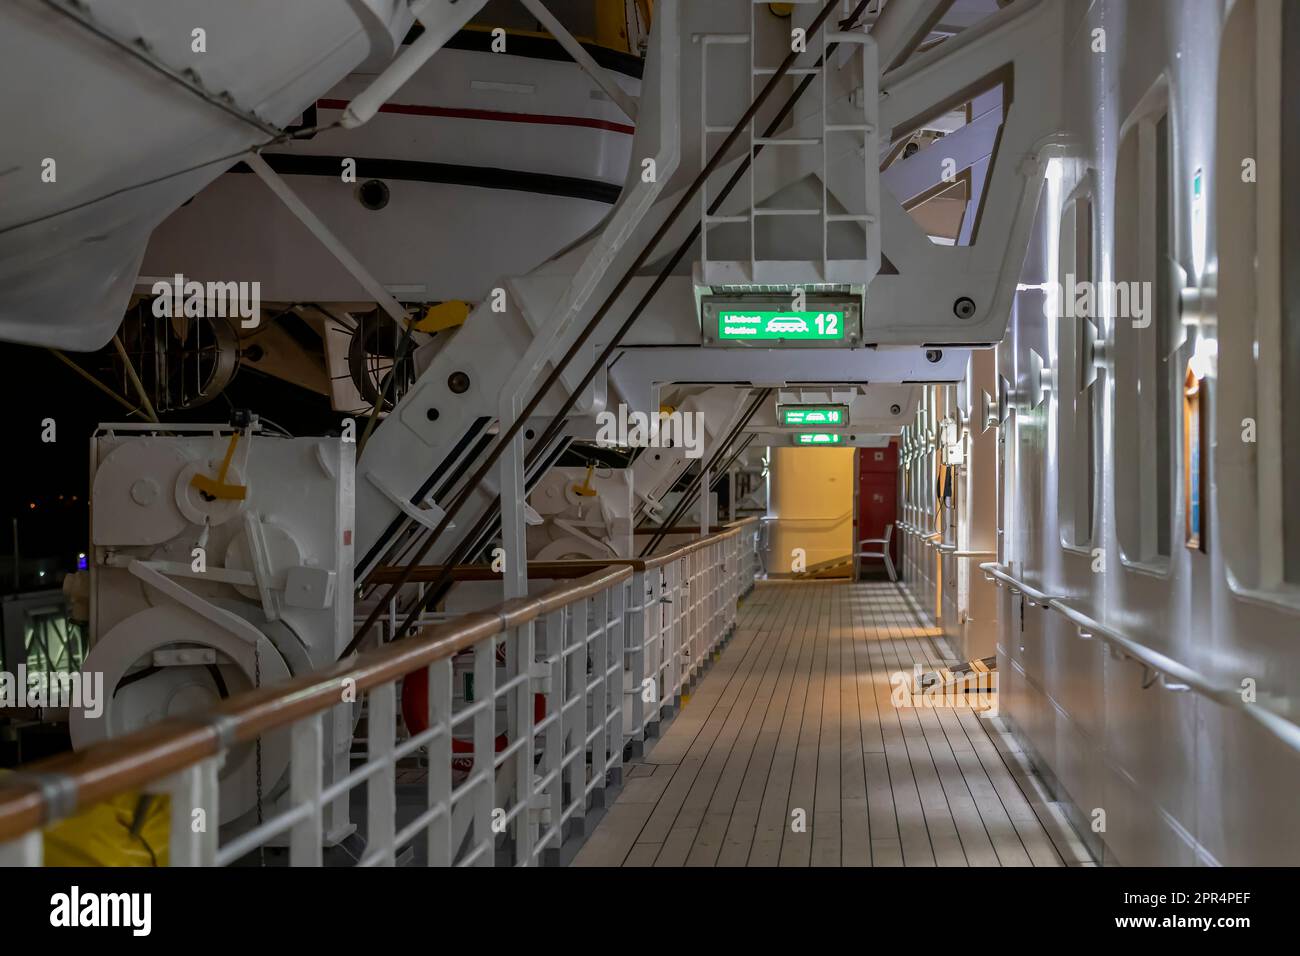 Promenadendeck am Abend auf Fred Olsens Kreuzfahrtschiff Barboral, das in Kiel, Norddeutschland, festgemacht ist. Stockfoto